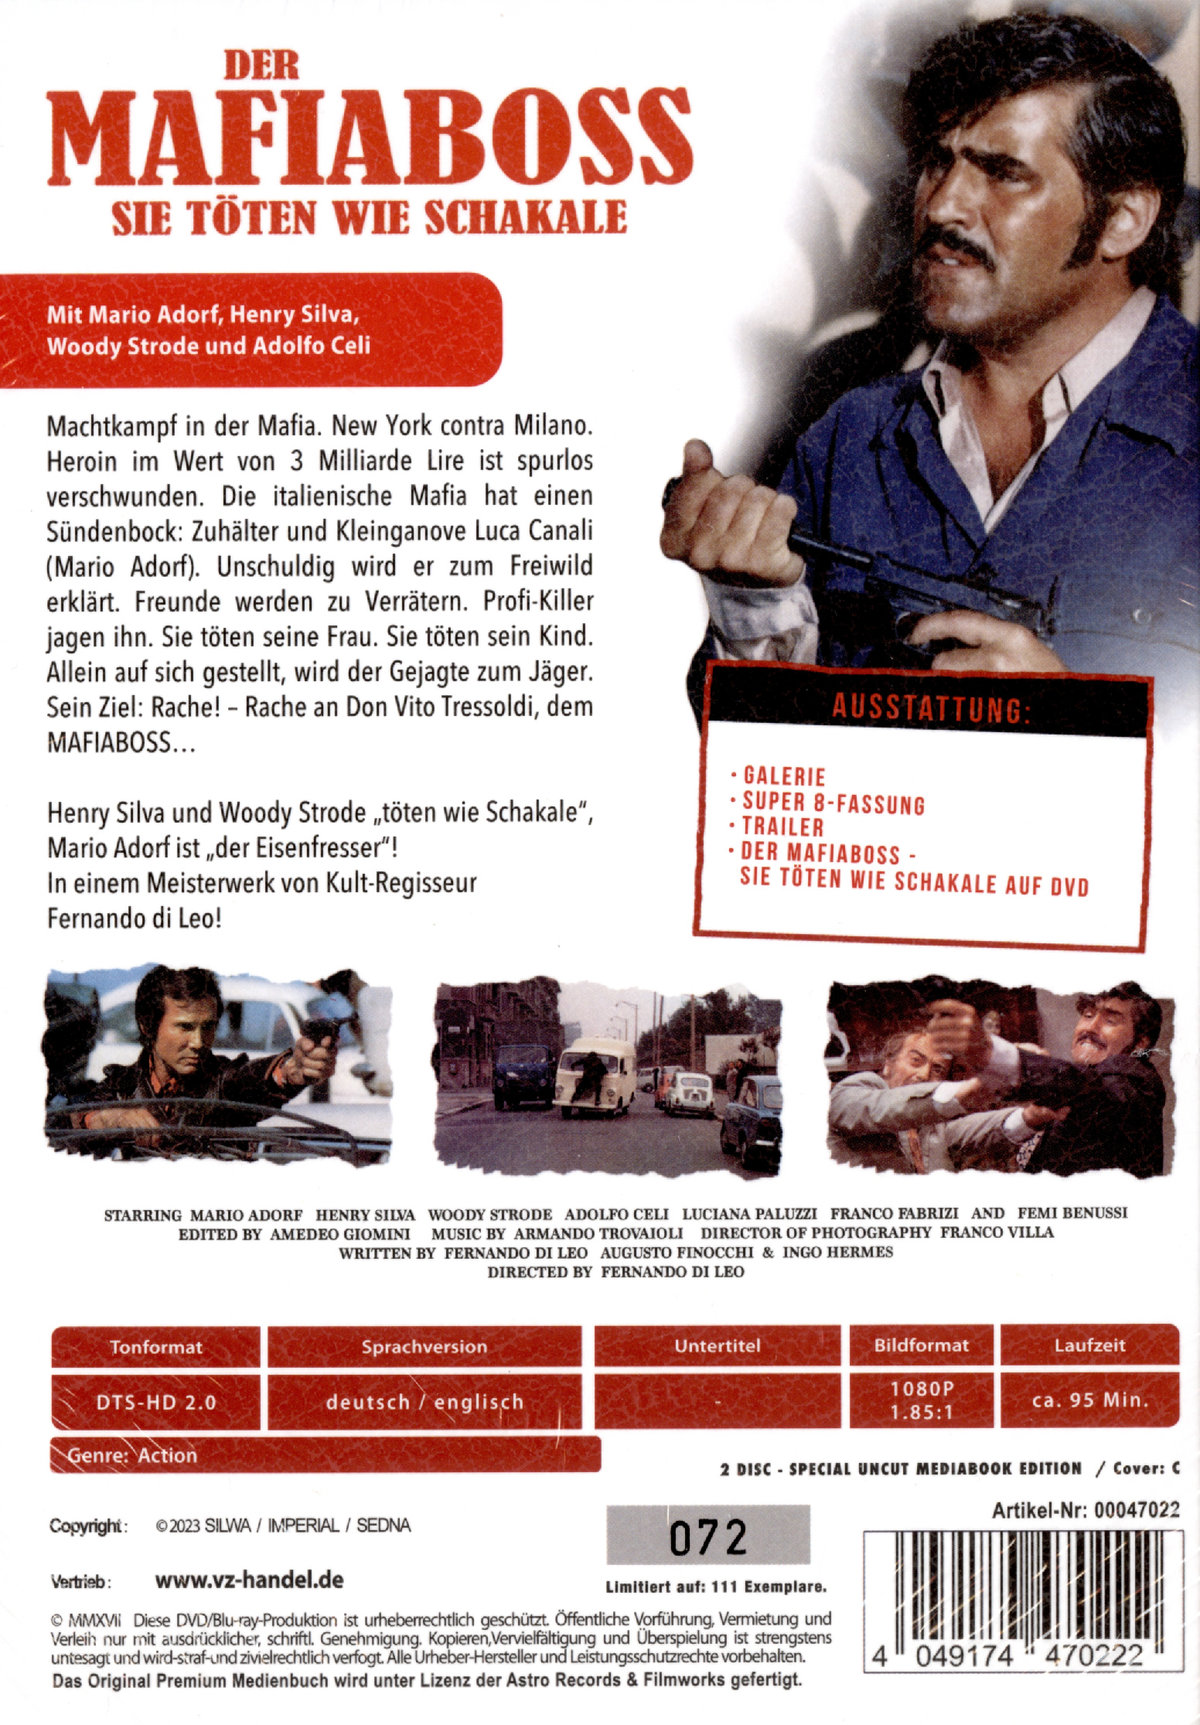 Der Mafiaboss - Sie töten wie Schakale - Uncut Mediabook Edition (DVD+blu-ray) (C)